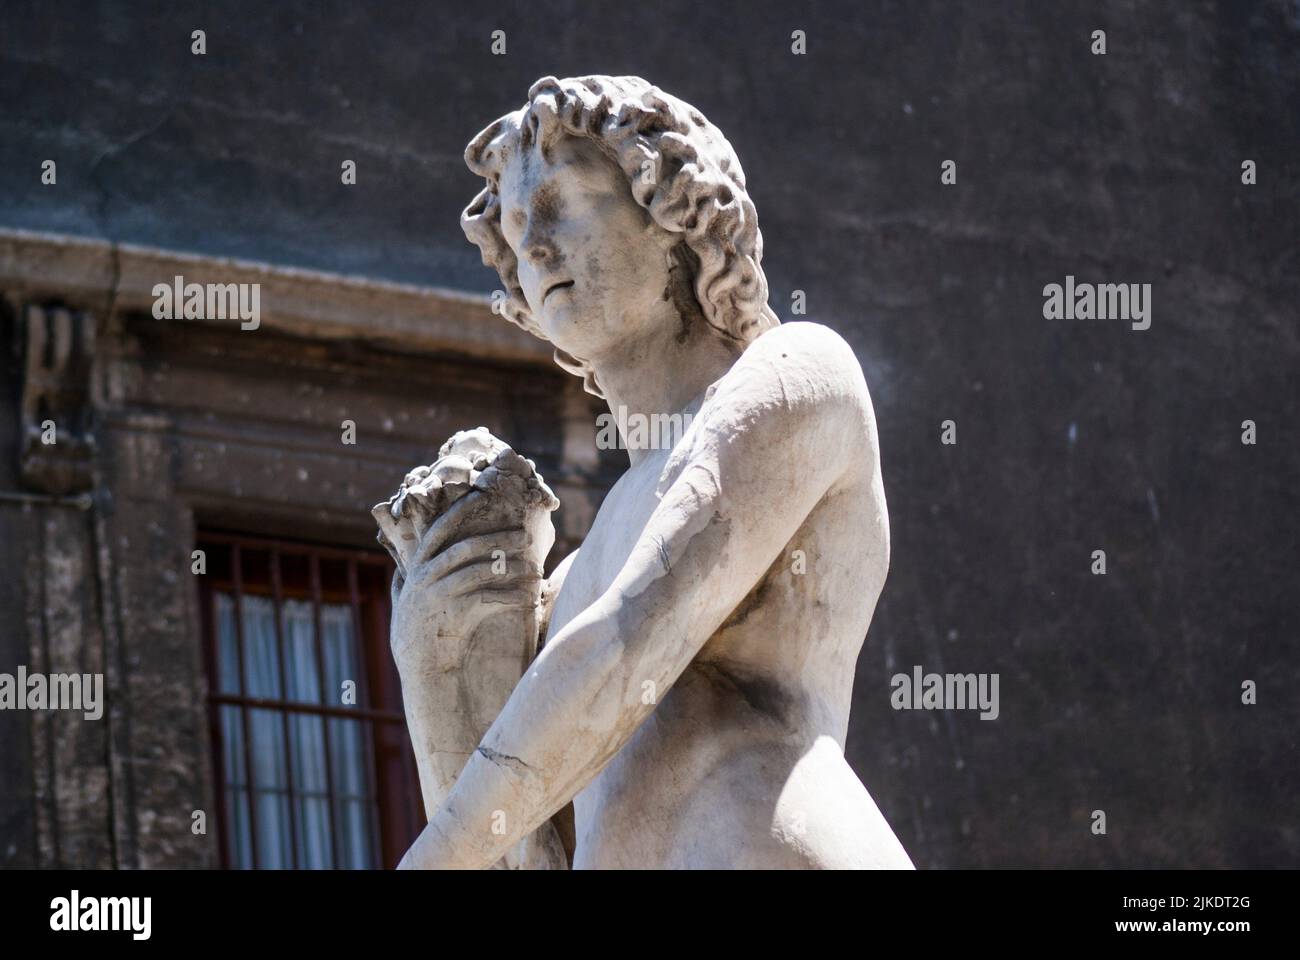 Sculpture of God Amenano, symbolizing Amenano River which flows underneath fountain. Amenano Fountain, Piazza Duomo, Metropolitan City of Catania, Stock Photo